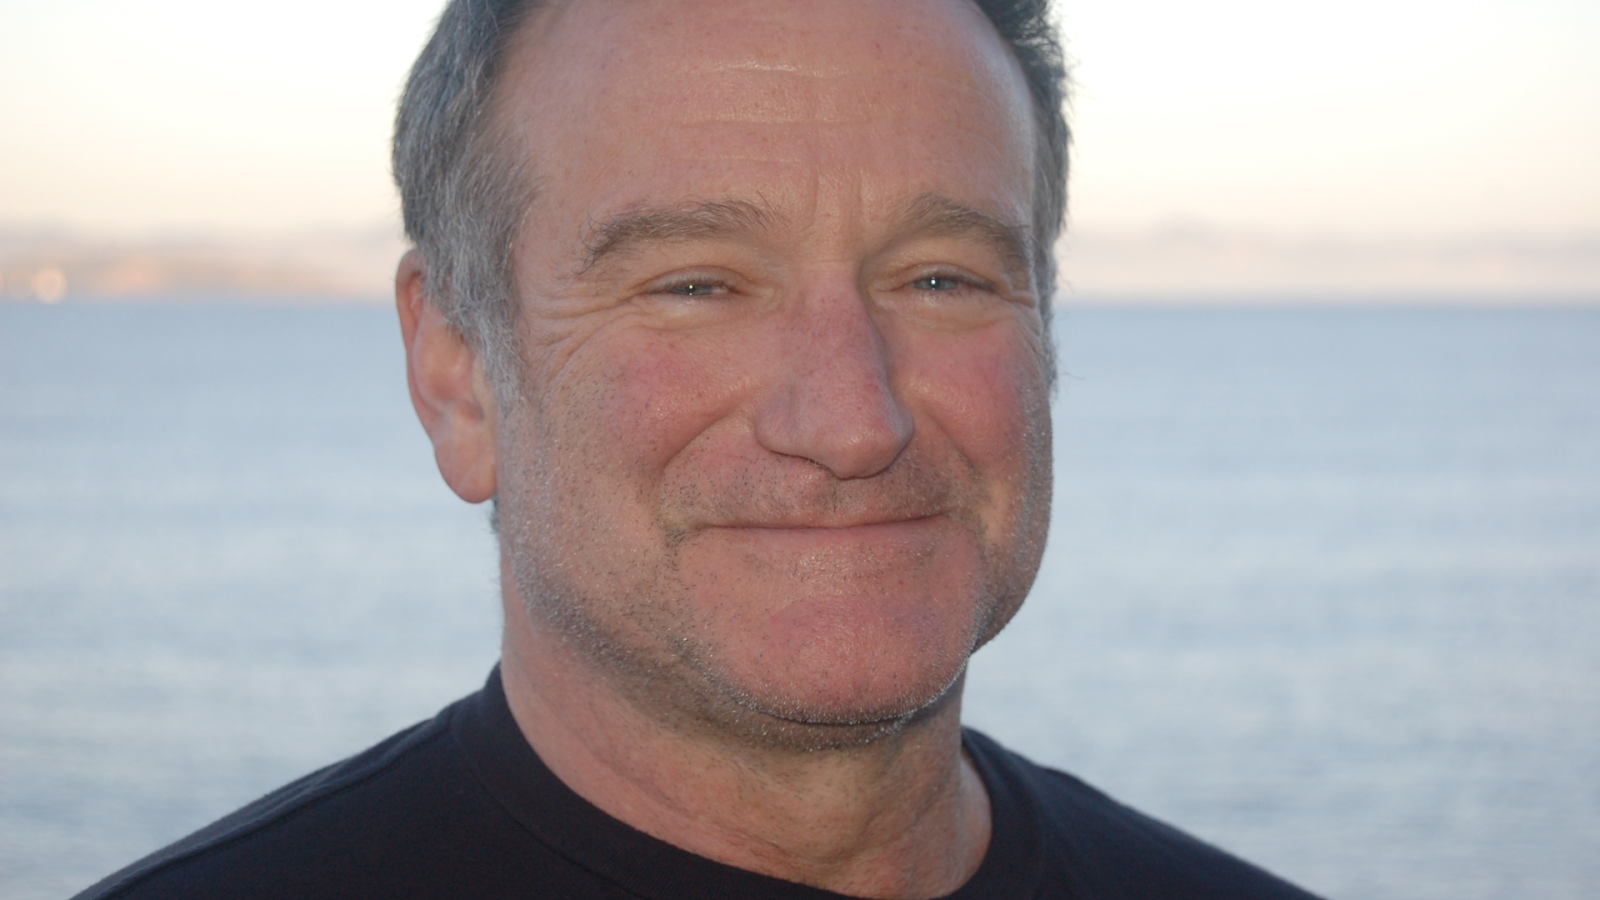 22. Robin Williams